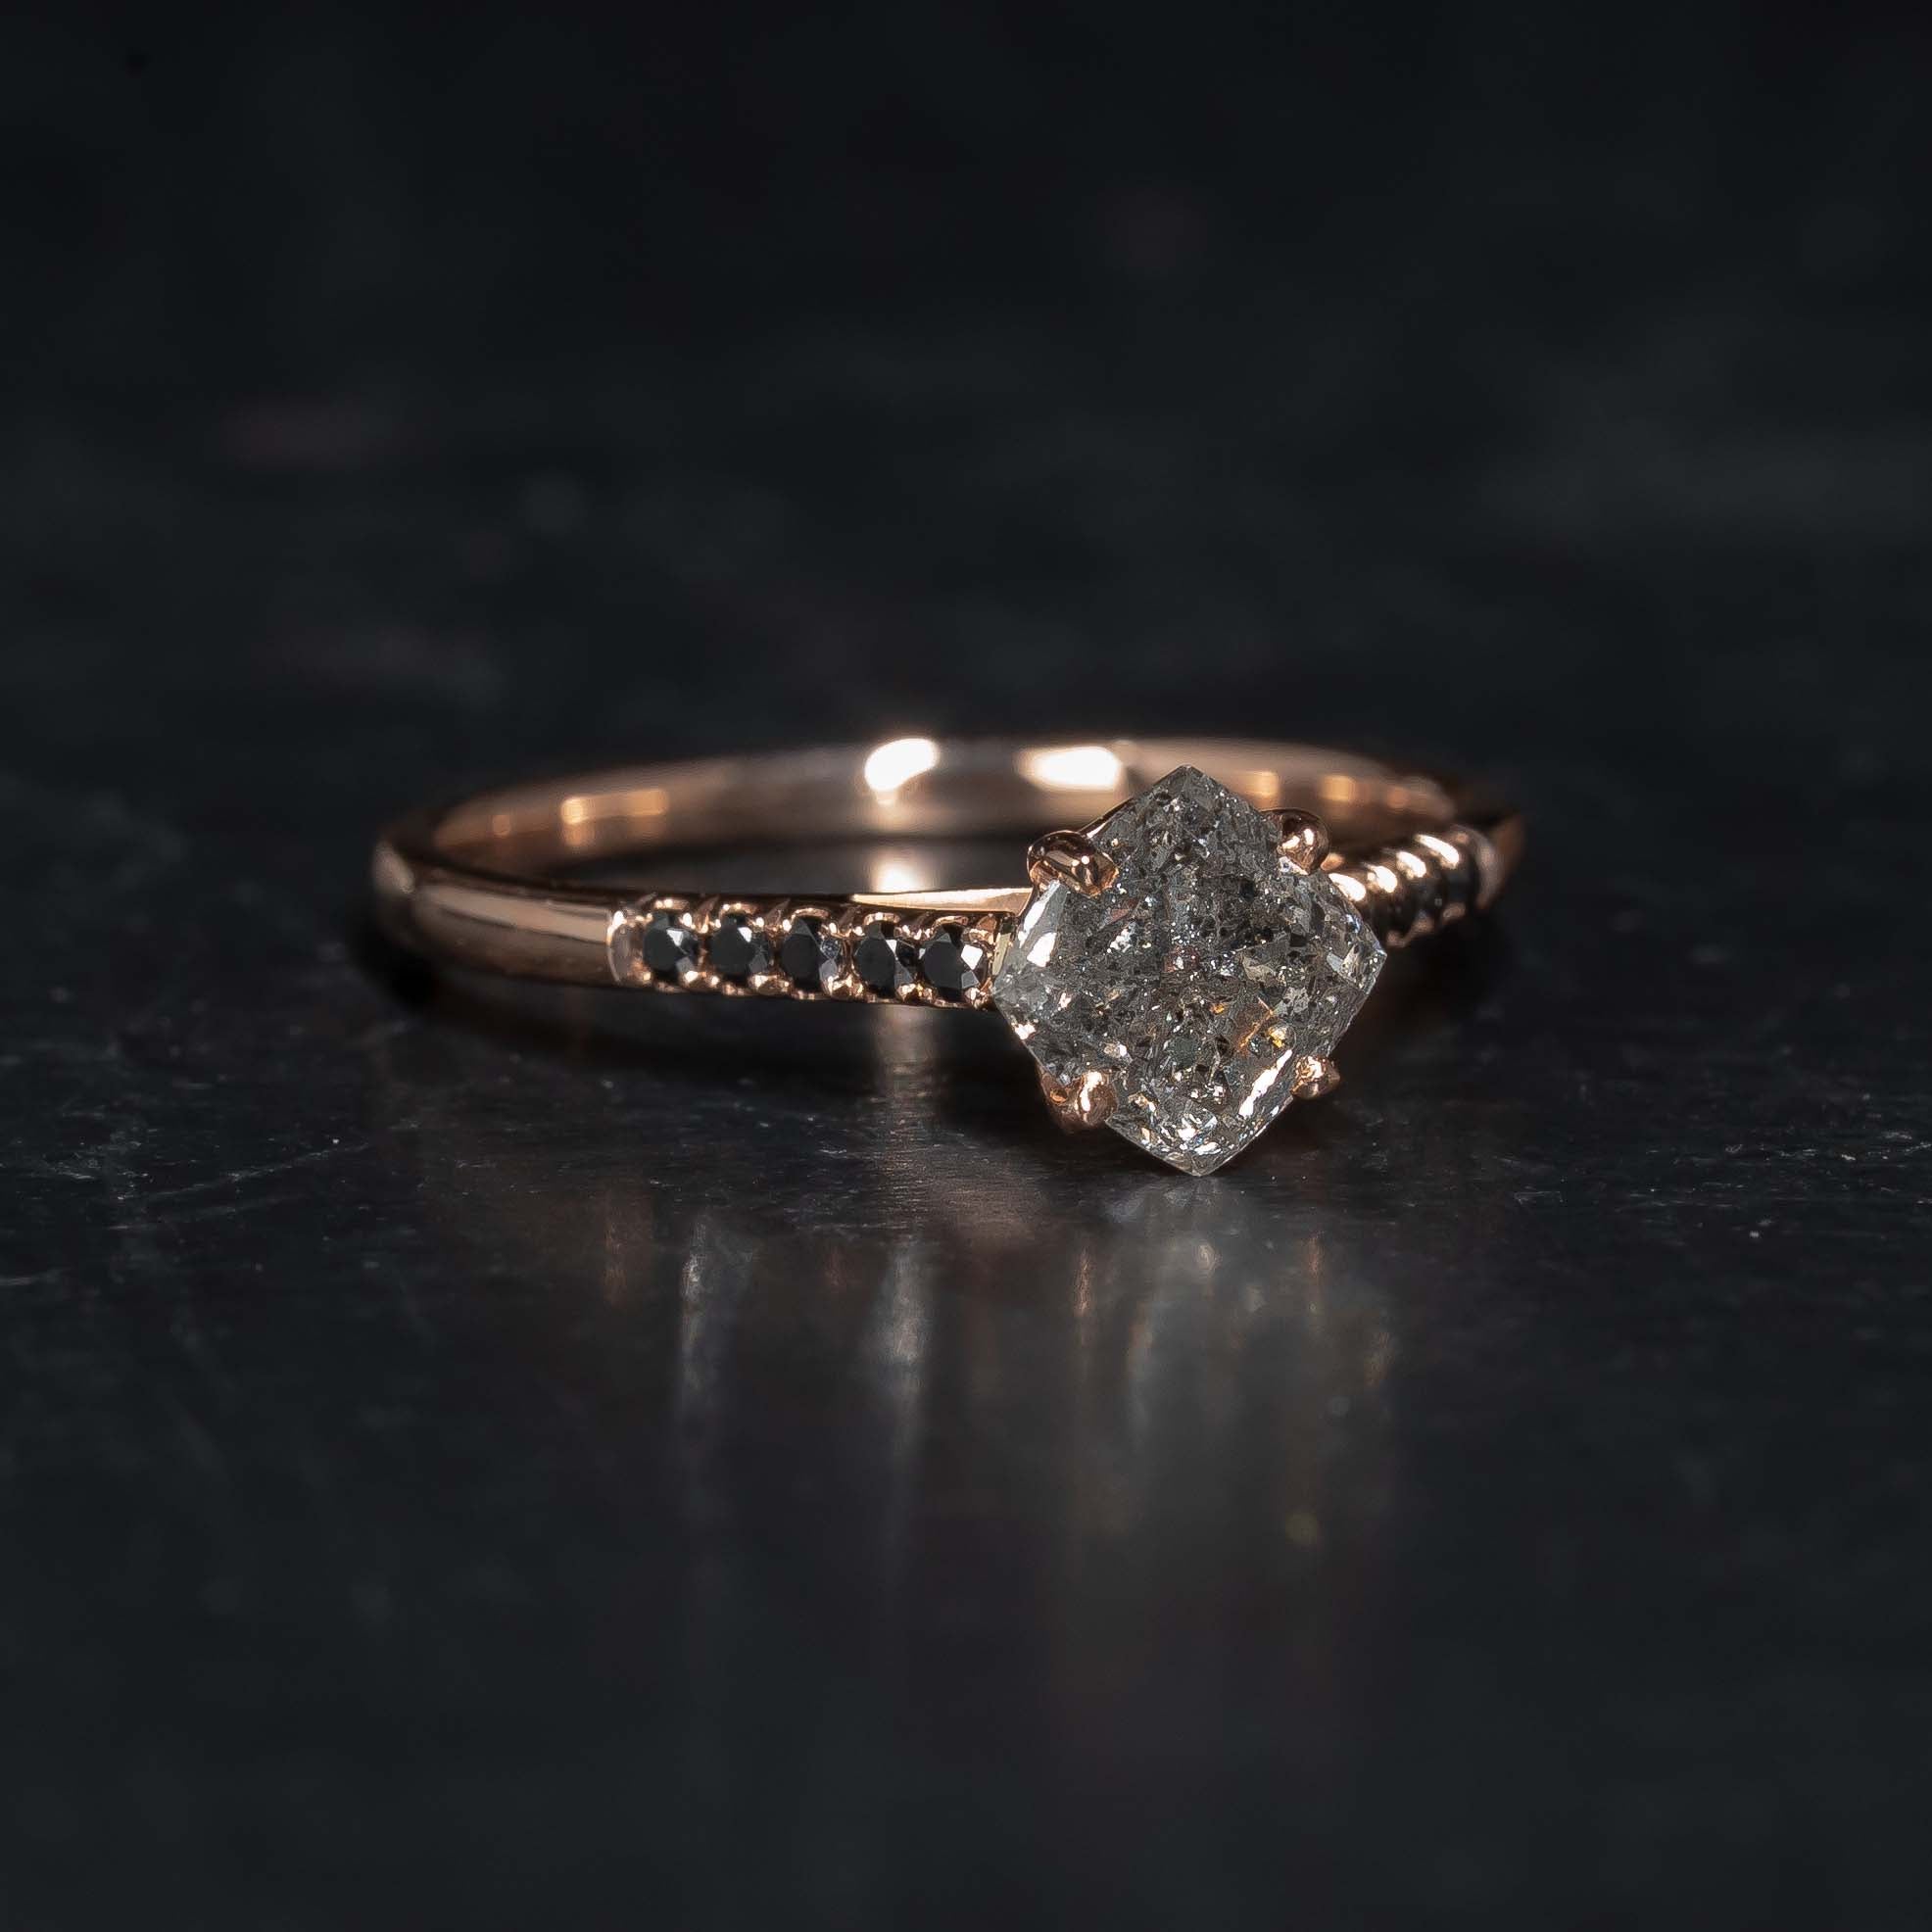 Bespoke handmade diamond engagement  ring